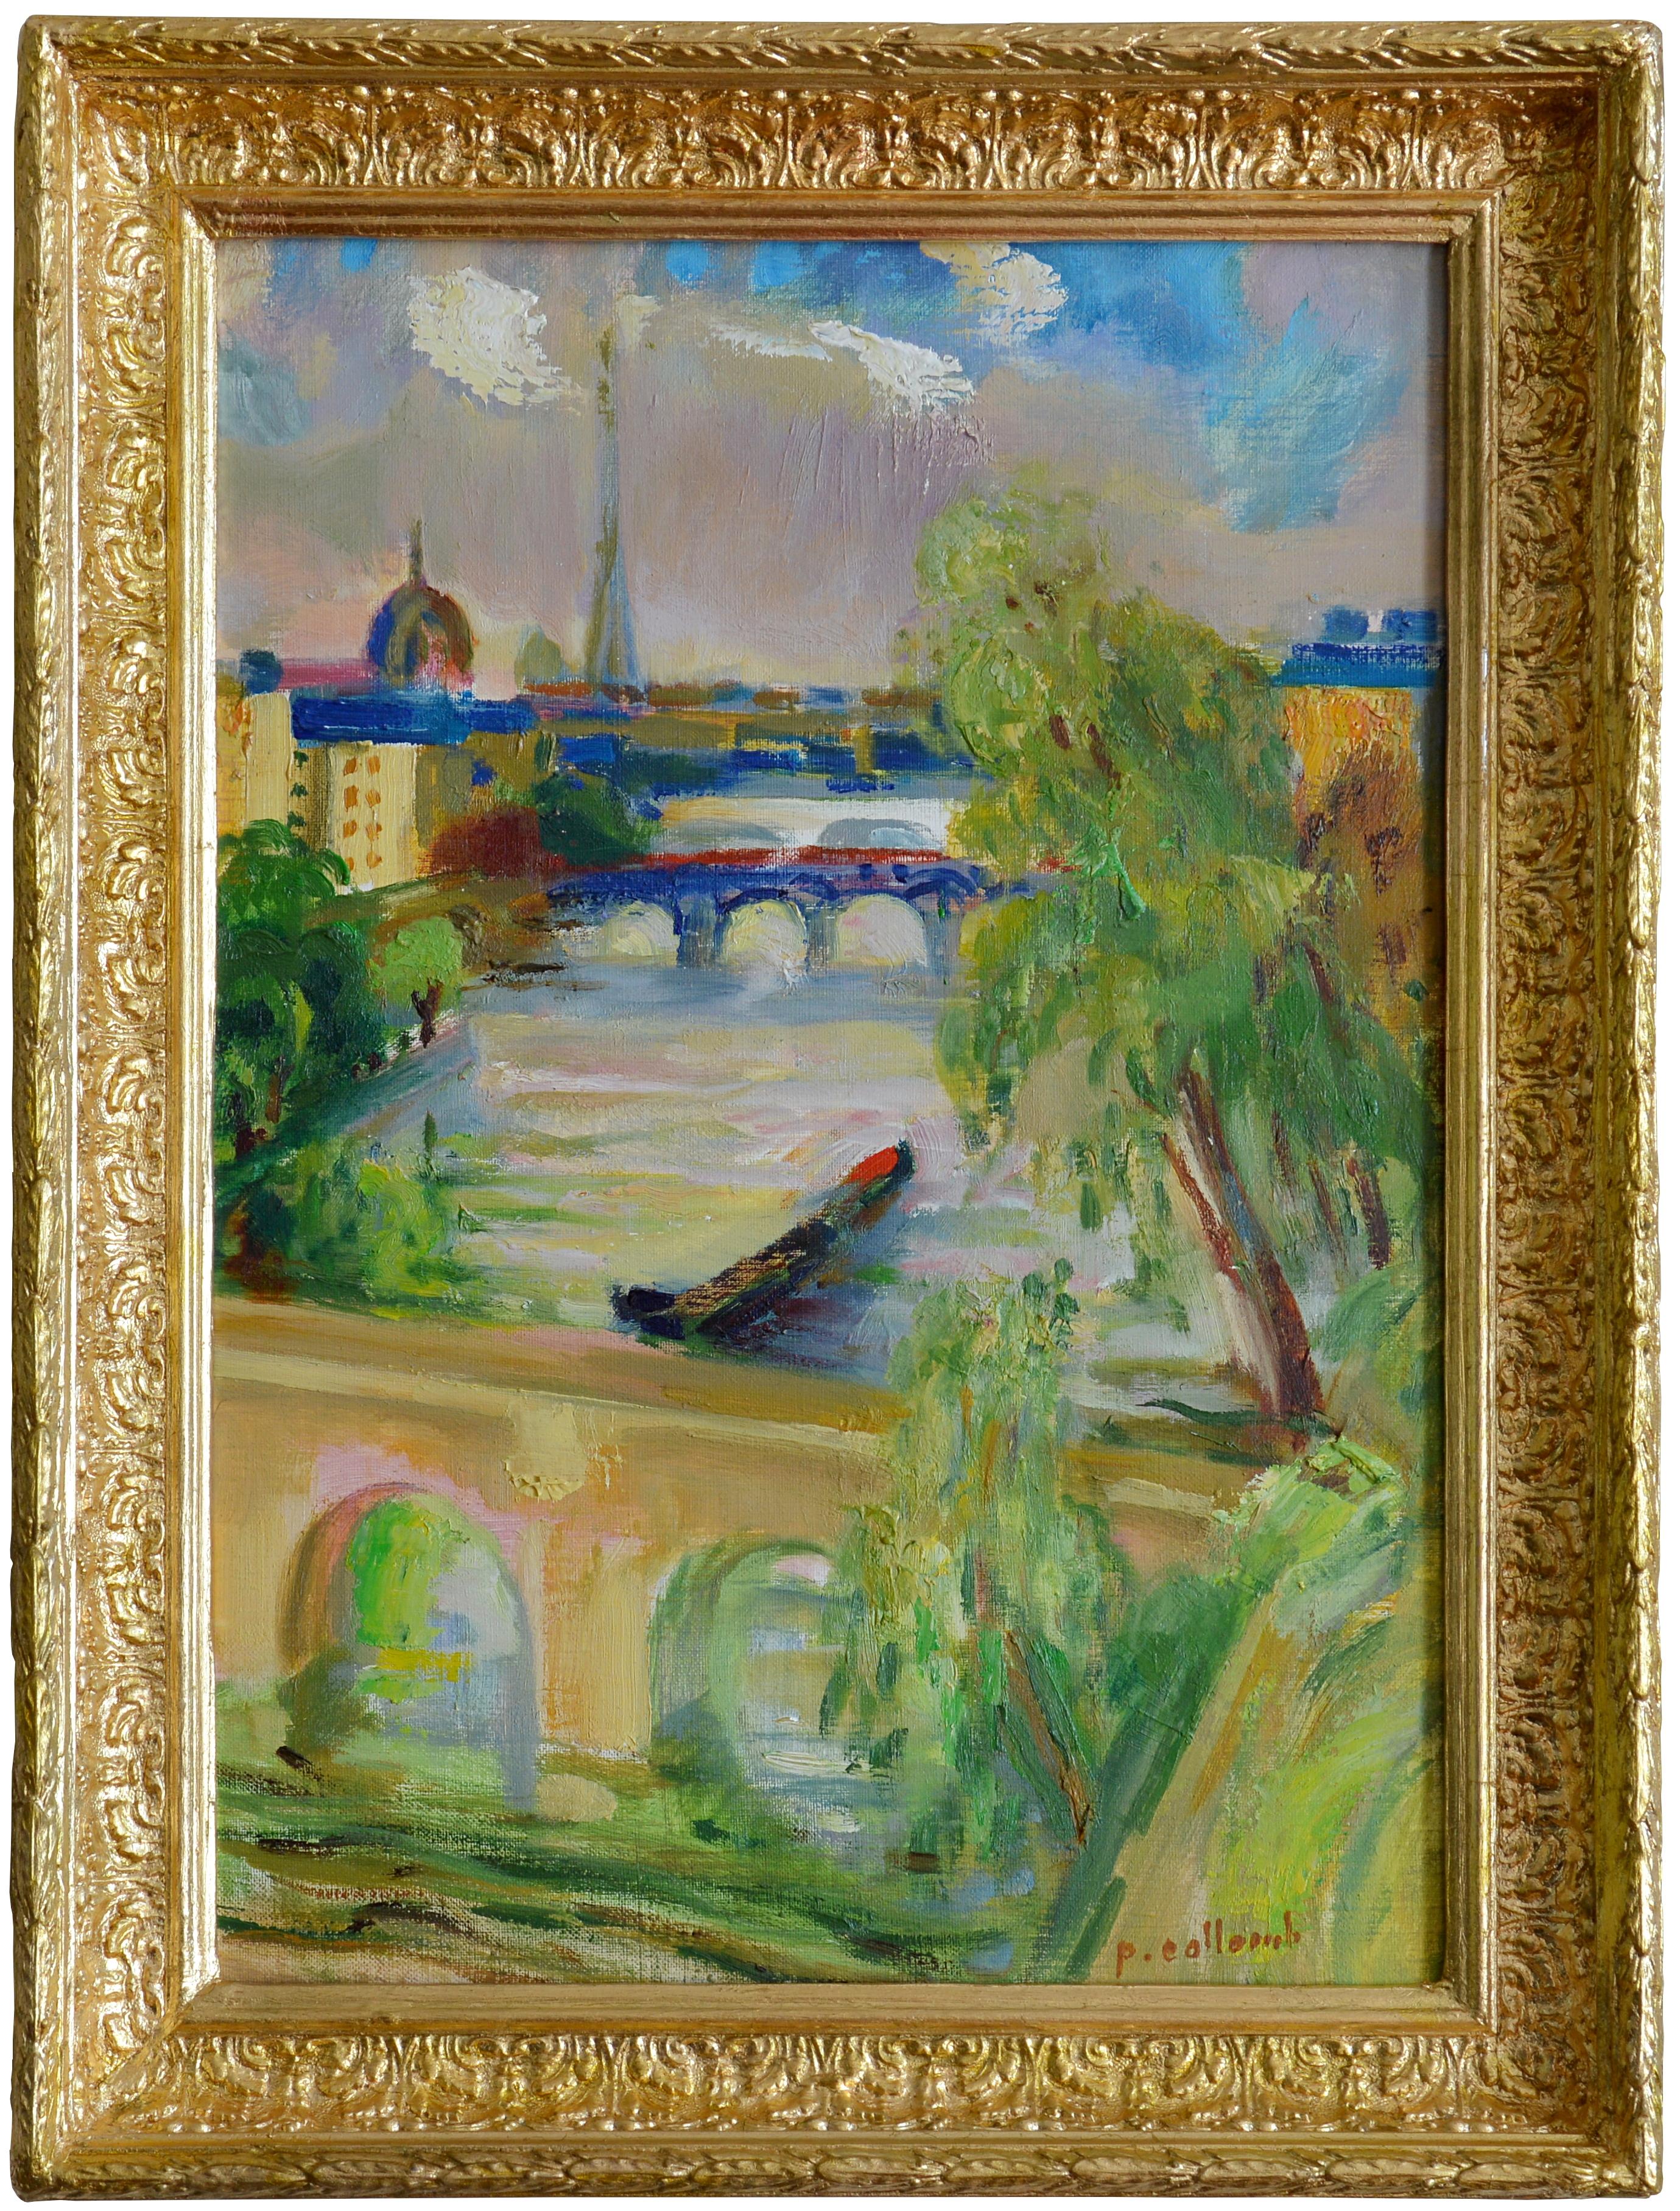 Paul Collomb, Paris, Tour Eiffel, Invalides, La belle vue, huile sur toile